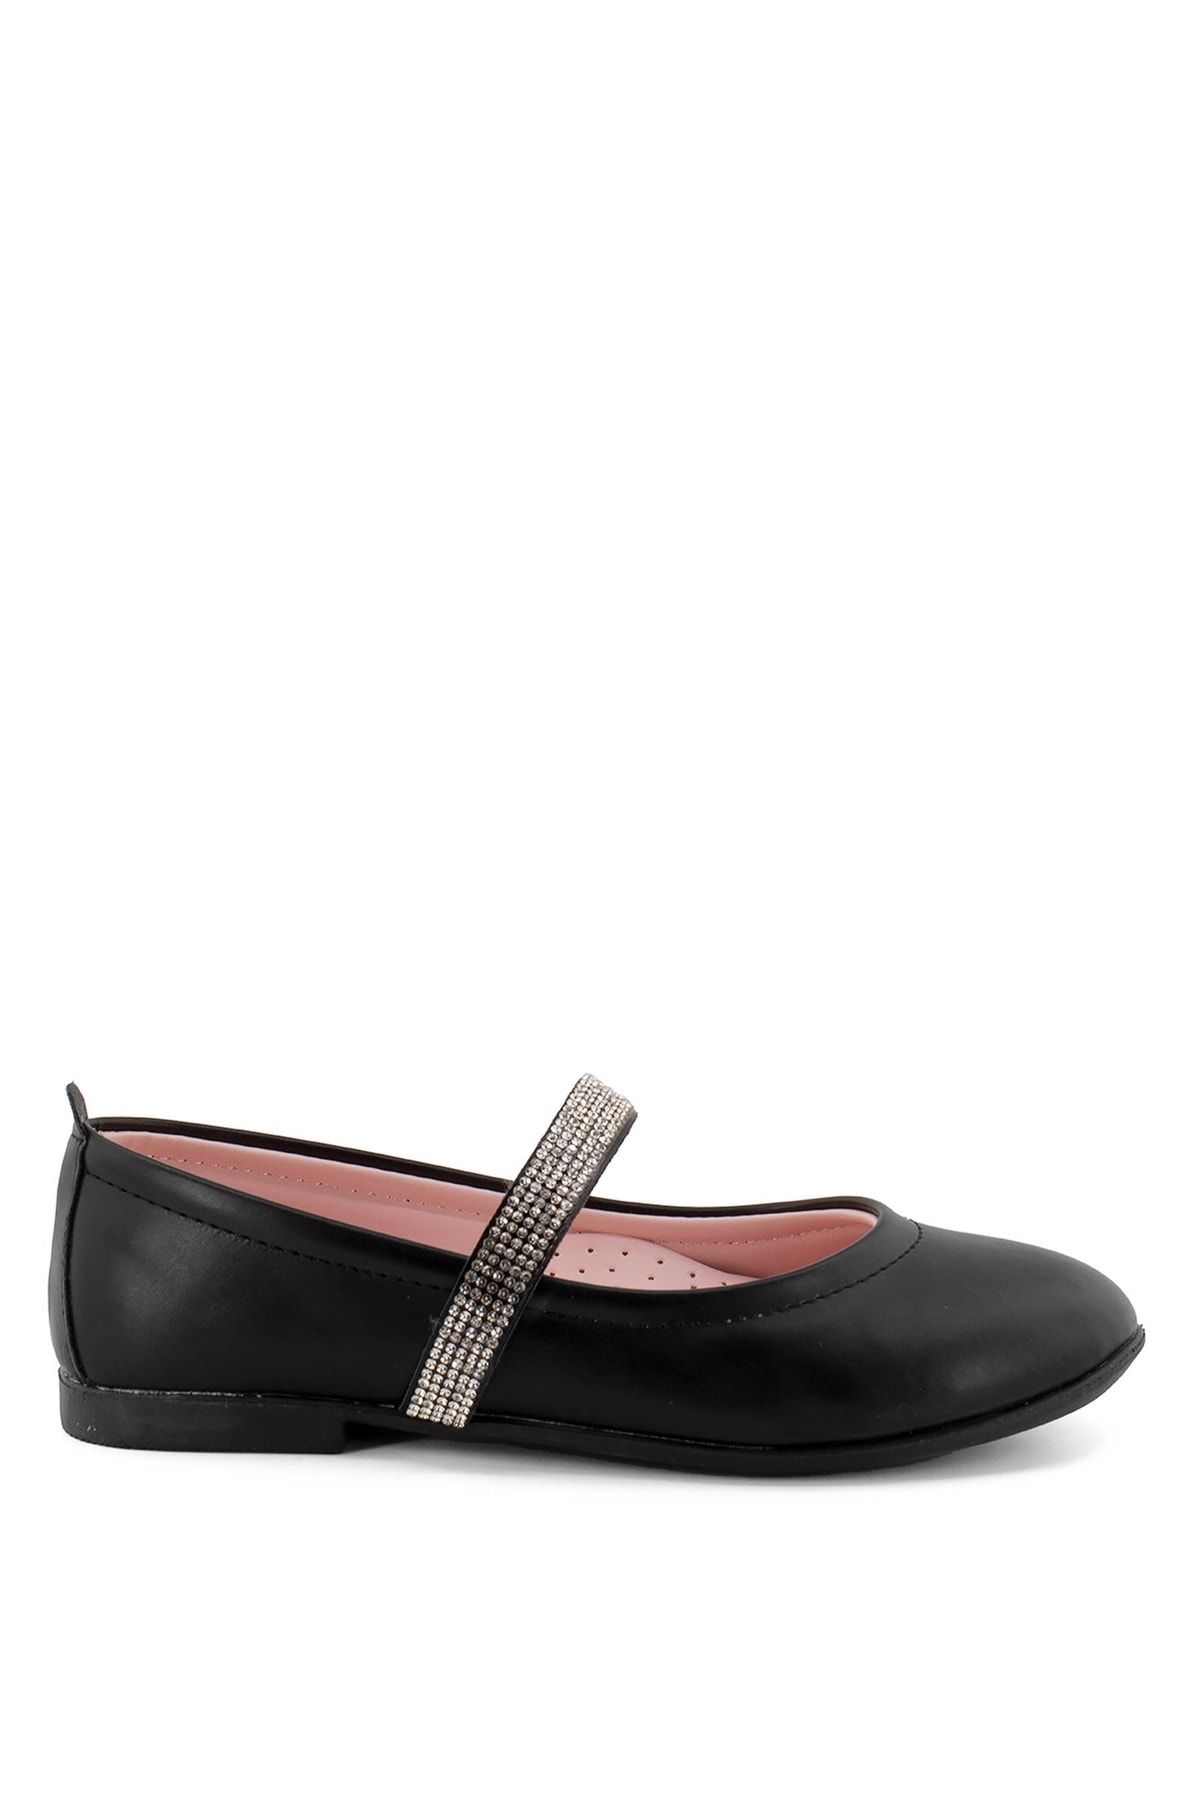 Ayakkabı Fuarı Elit V 9502 Filet Kız Çocuk Günlük Ayakkabı Siyah